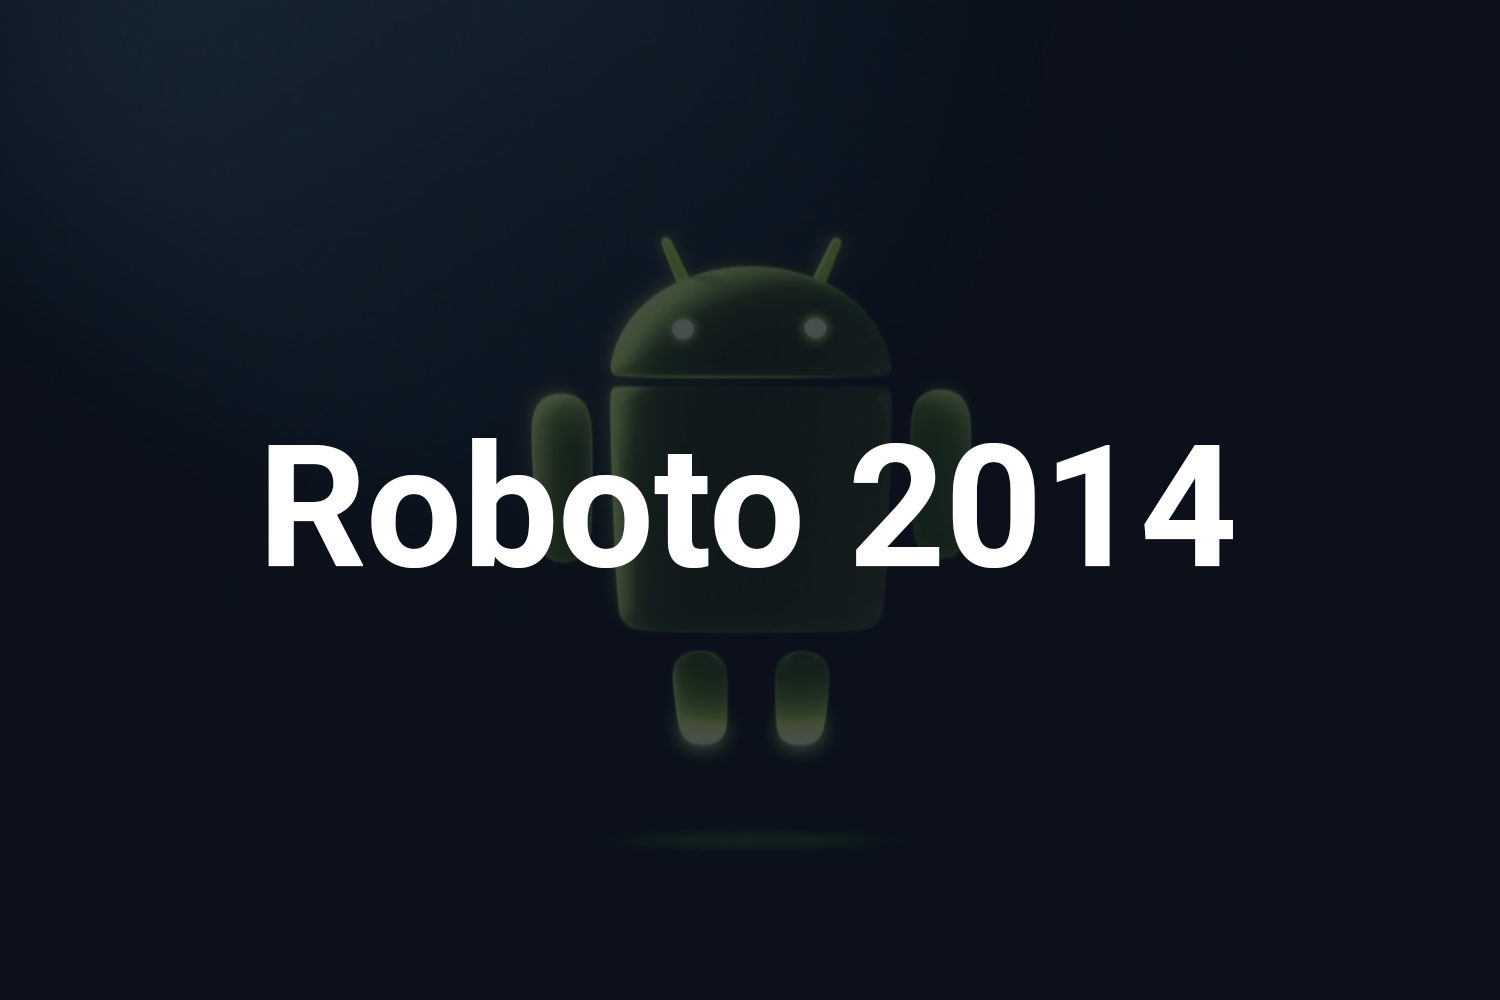 Roboto 2014 Free Font Family